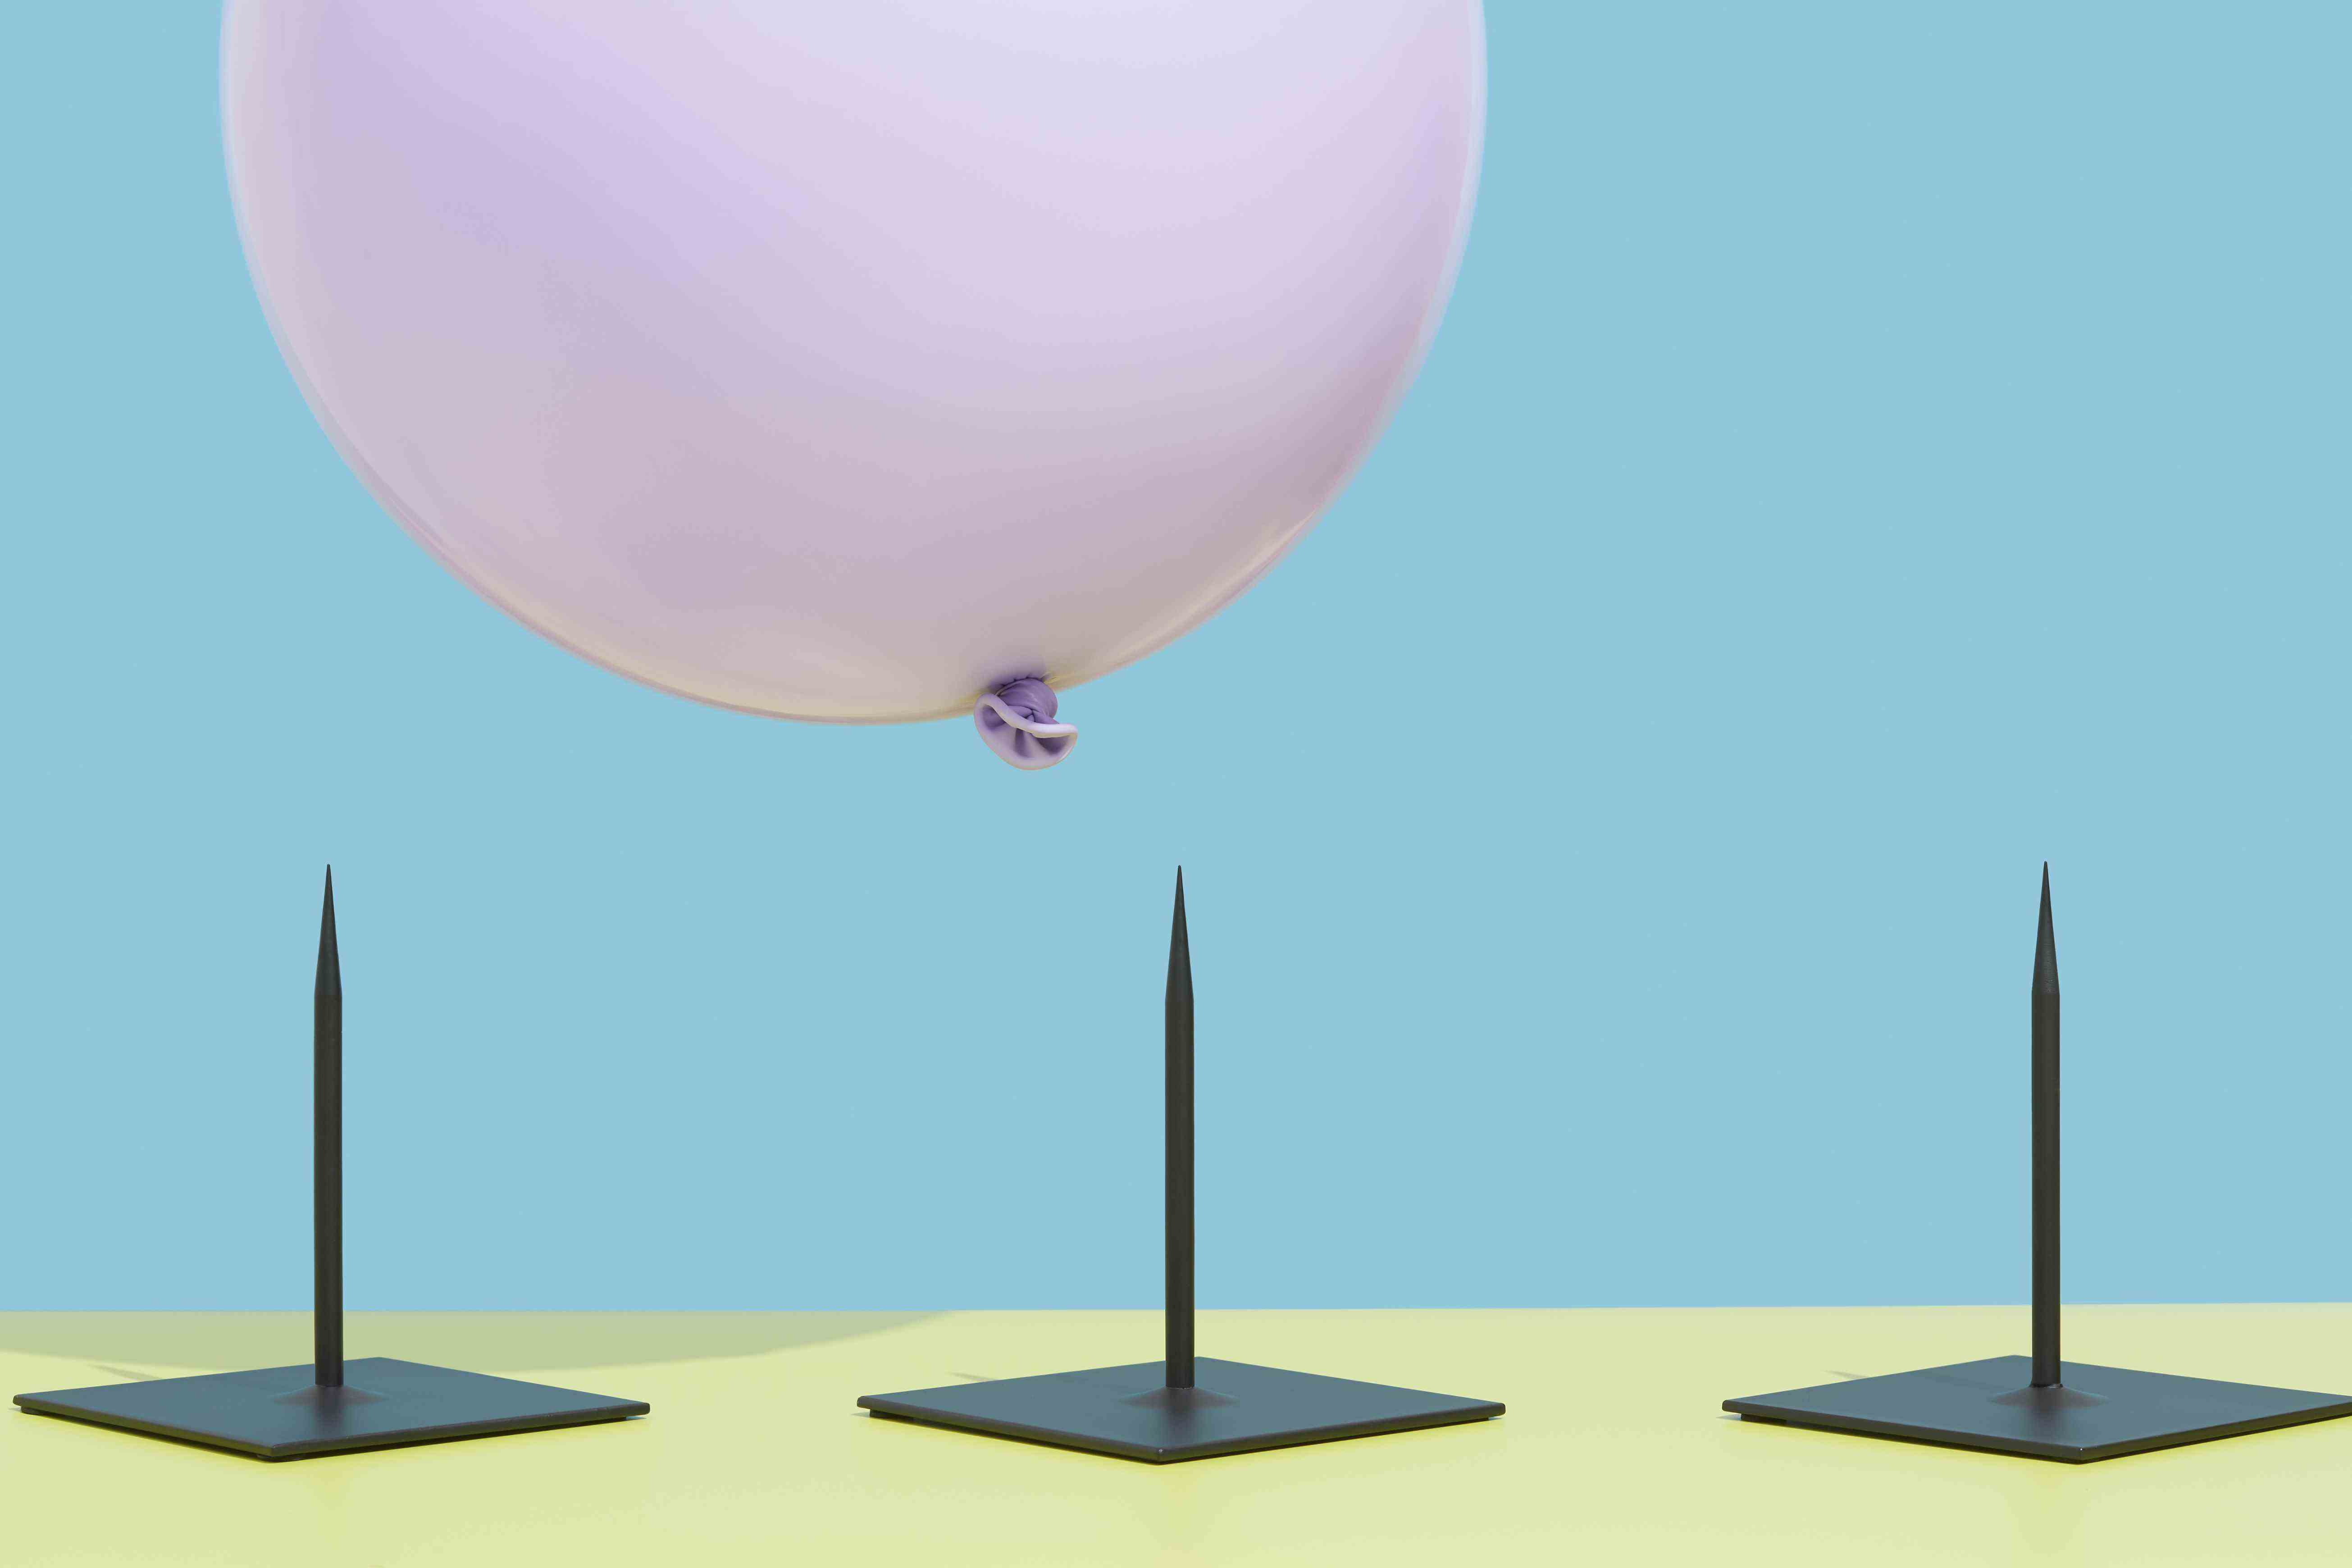 Image d'un ballon rose planant au-dessus de trois pointes pour représenter le risque.